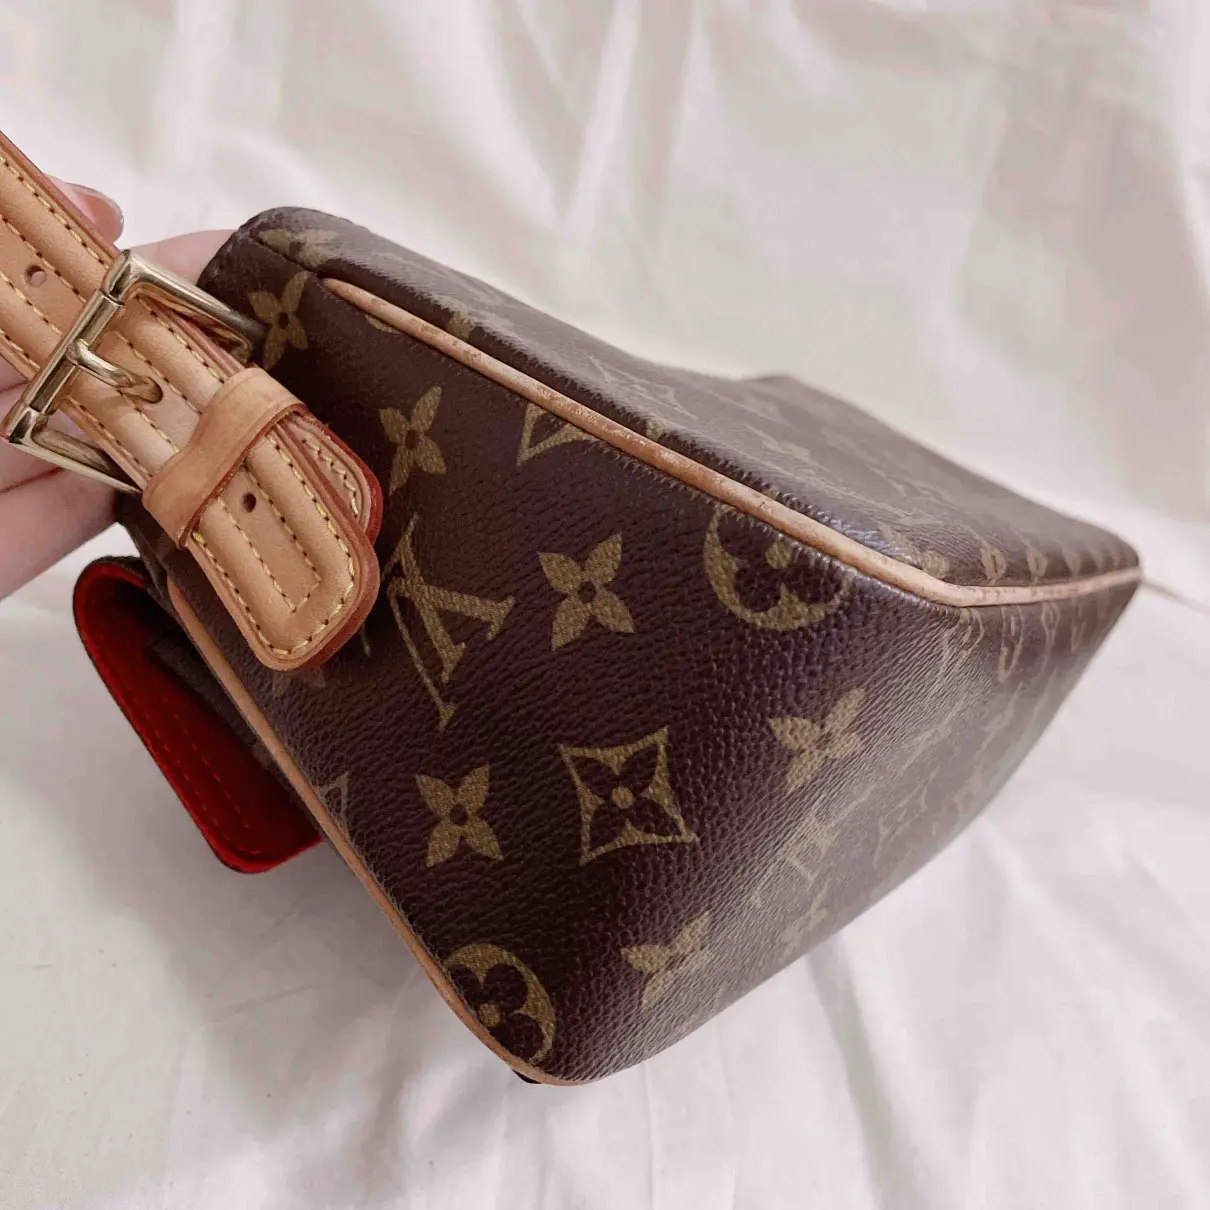 Buy Louis Vuitton Viva Cité cloth handbag online